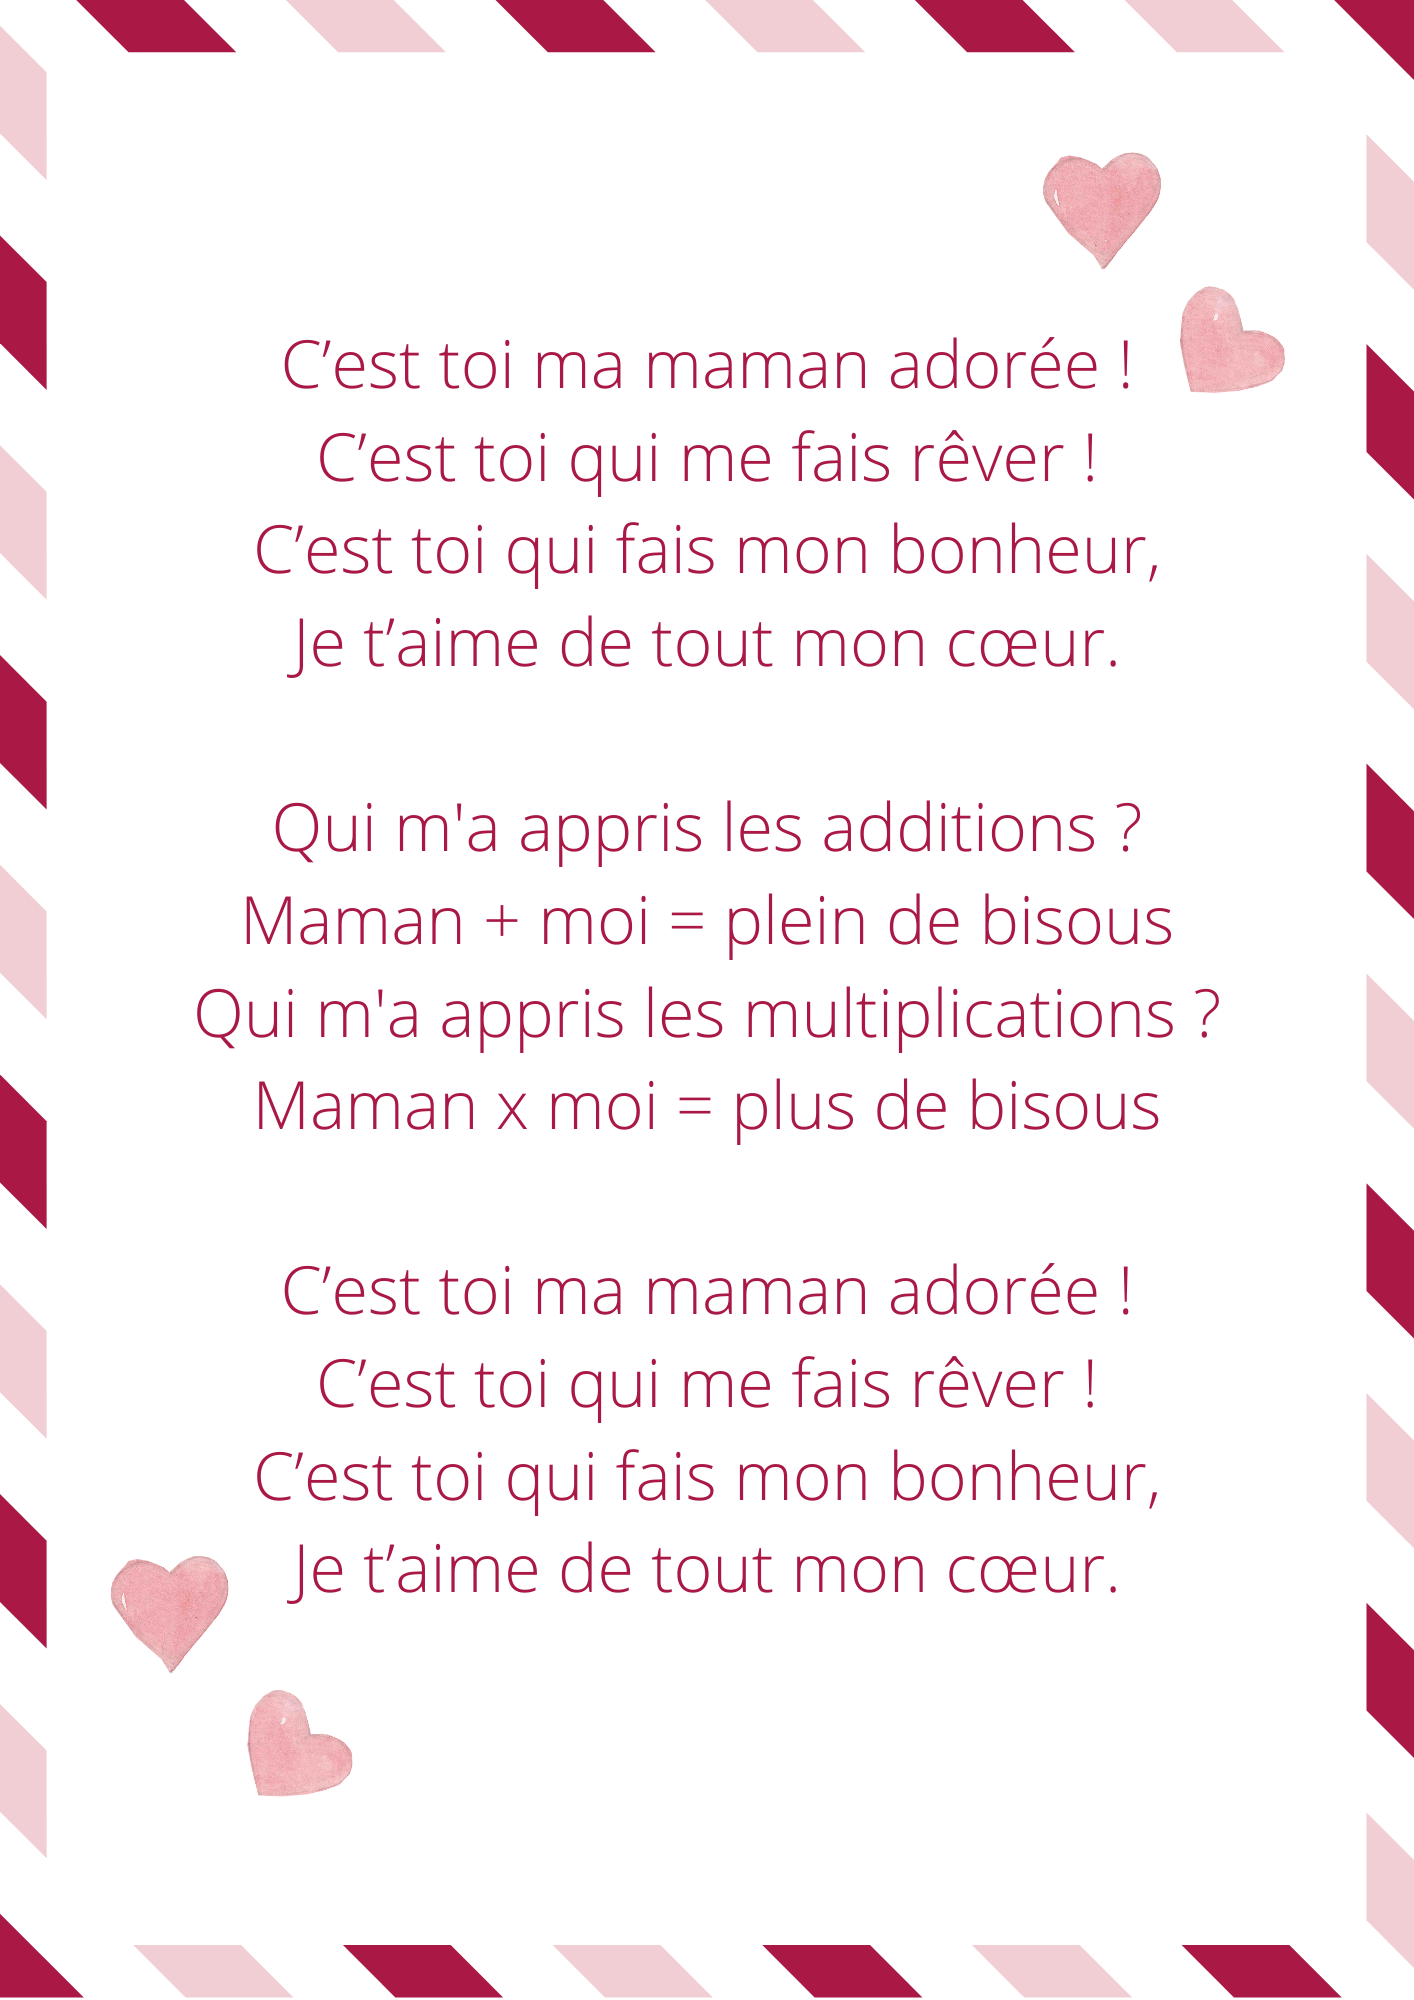 French poem for mother's day - comptine fête des mères